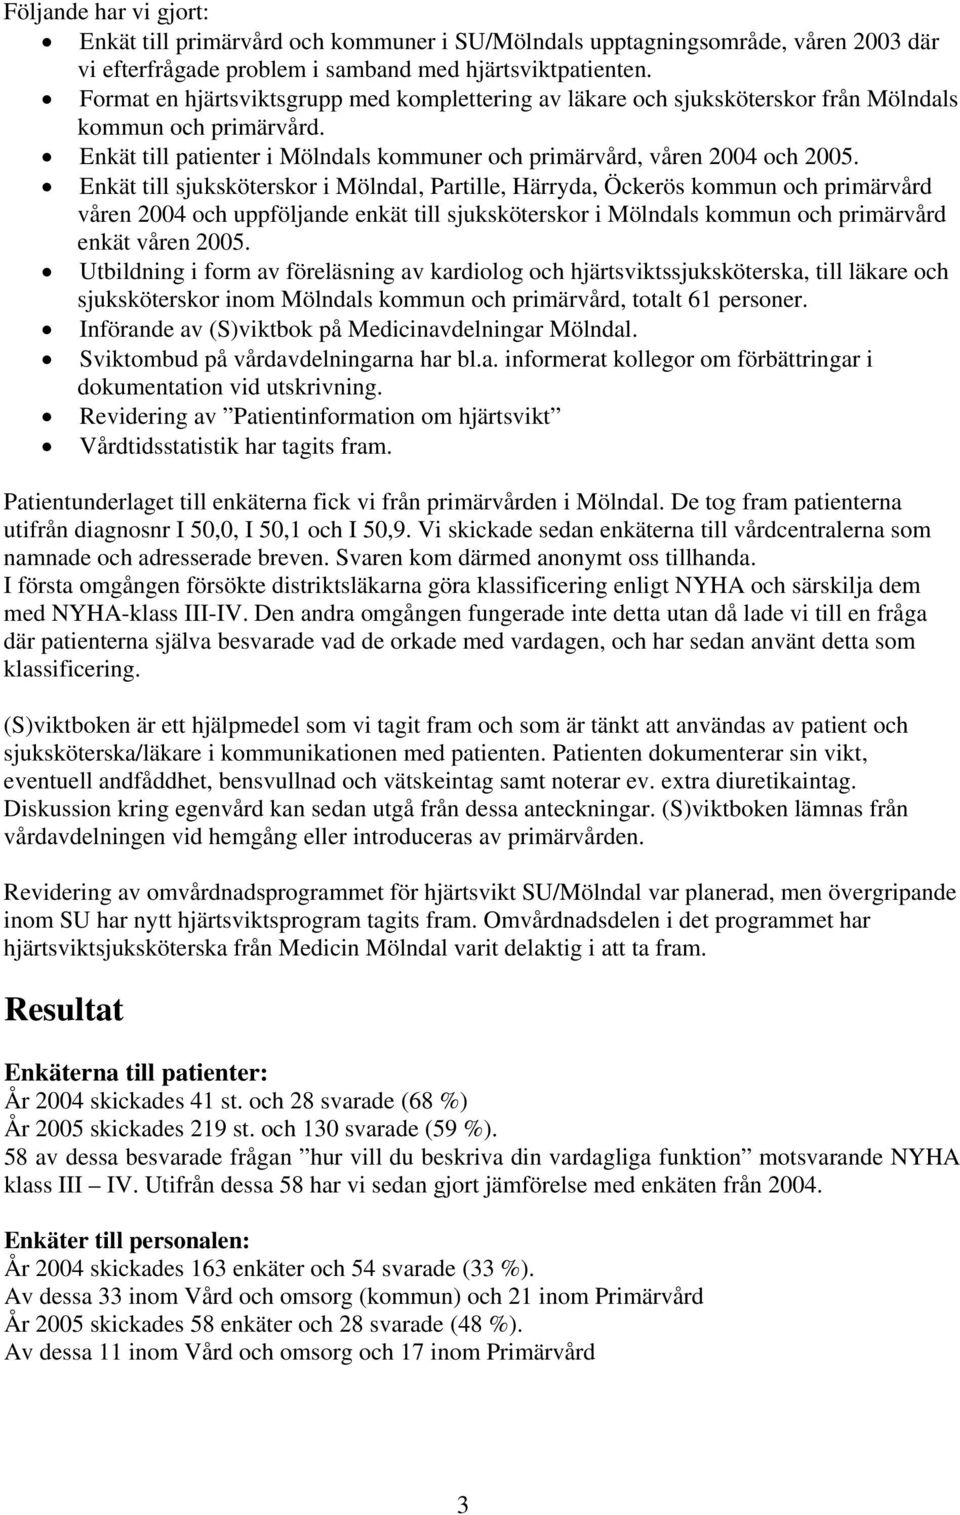 Enkät till sjuksköterskor i Mölndal, Partille, Härryda, Öckerös kommun och primärvård våren 2004 och uppföljande enkät till sjuksköterskor i Mölndals kommun och primärvård enkät våren 2005.